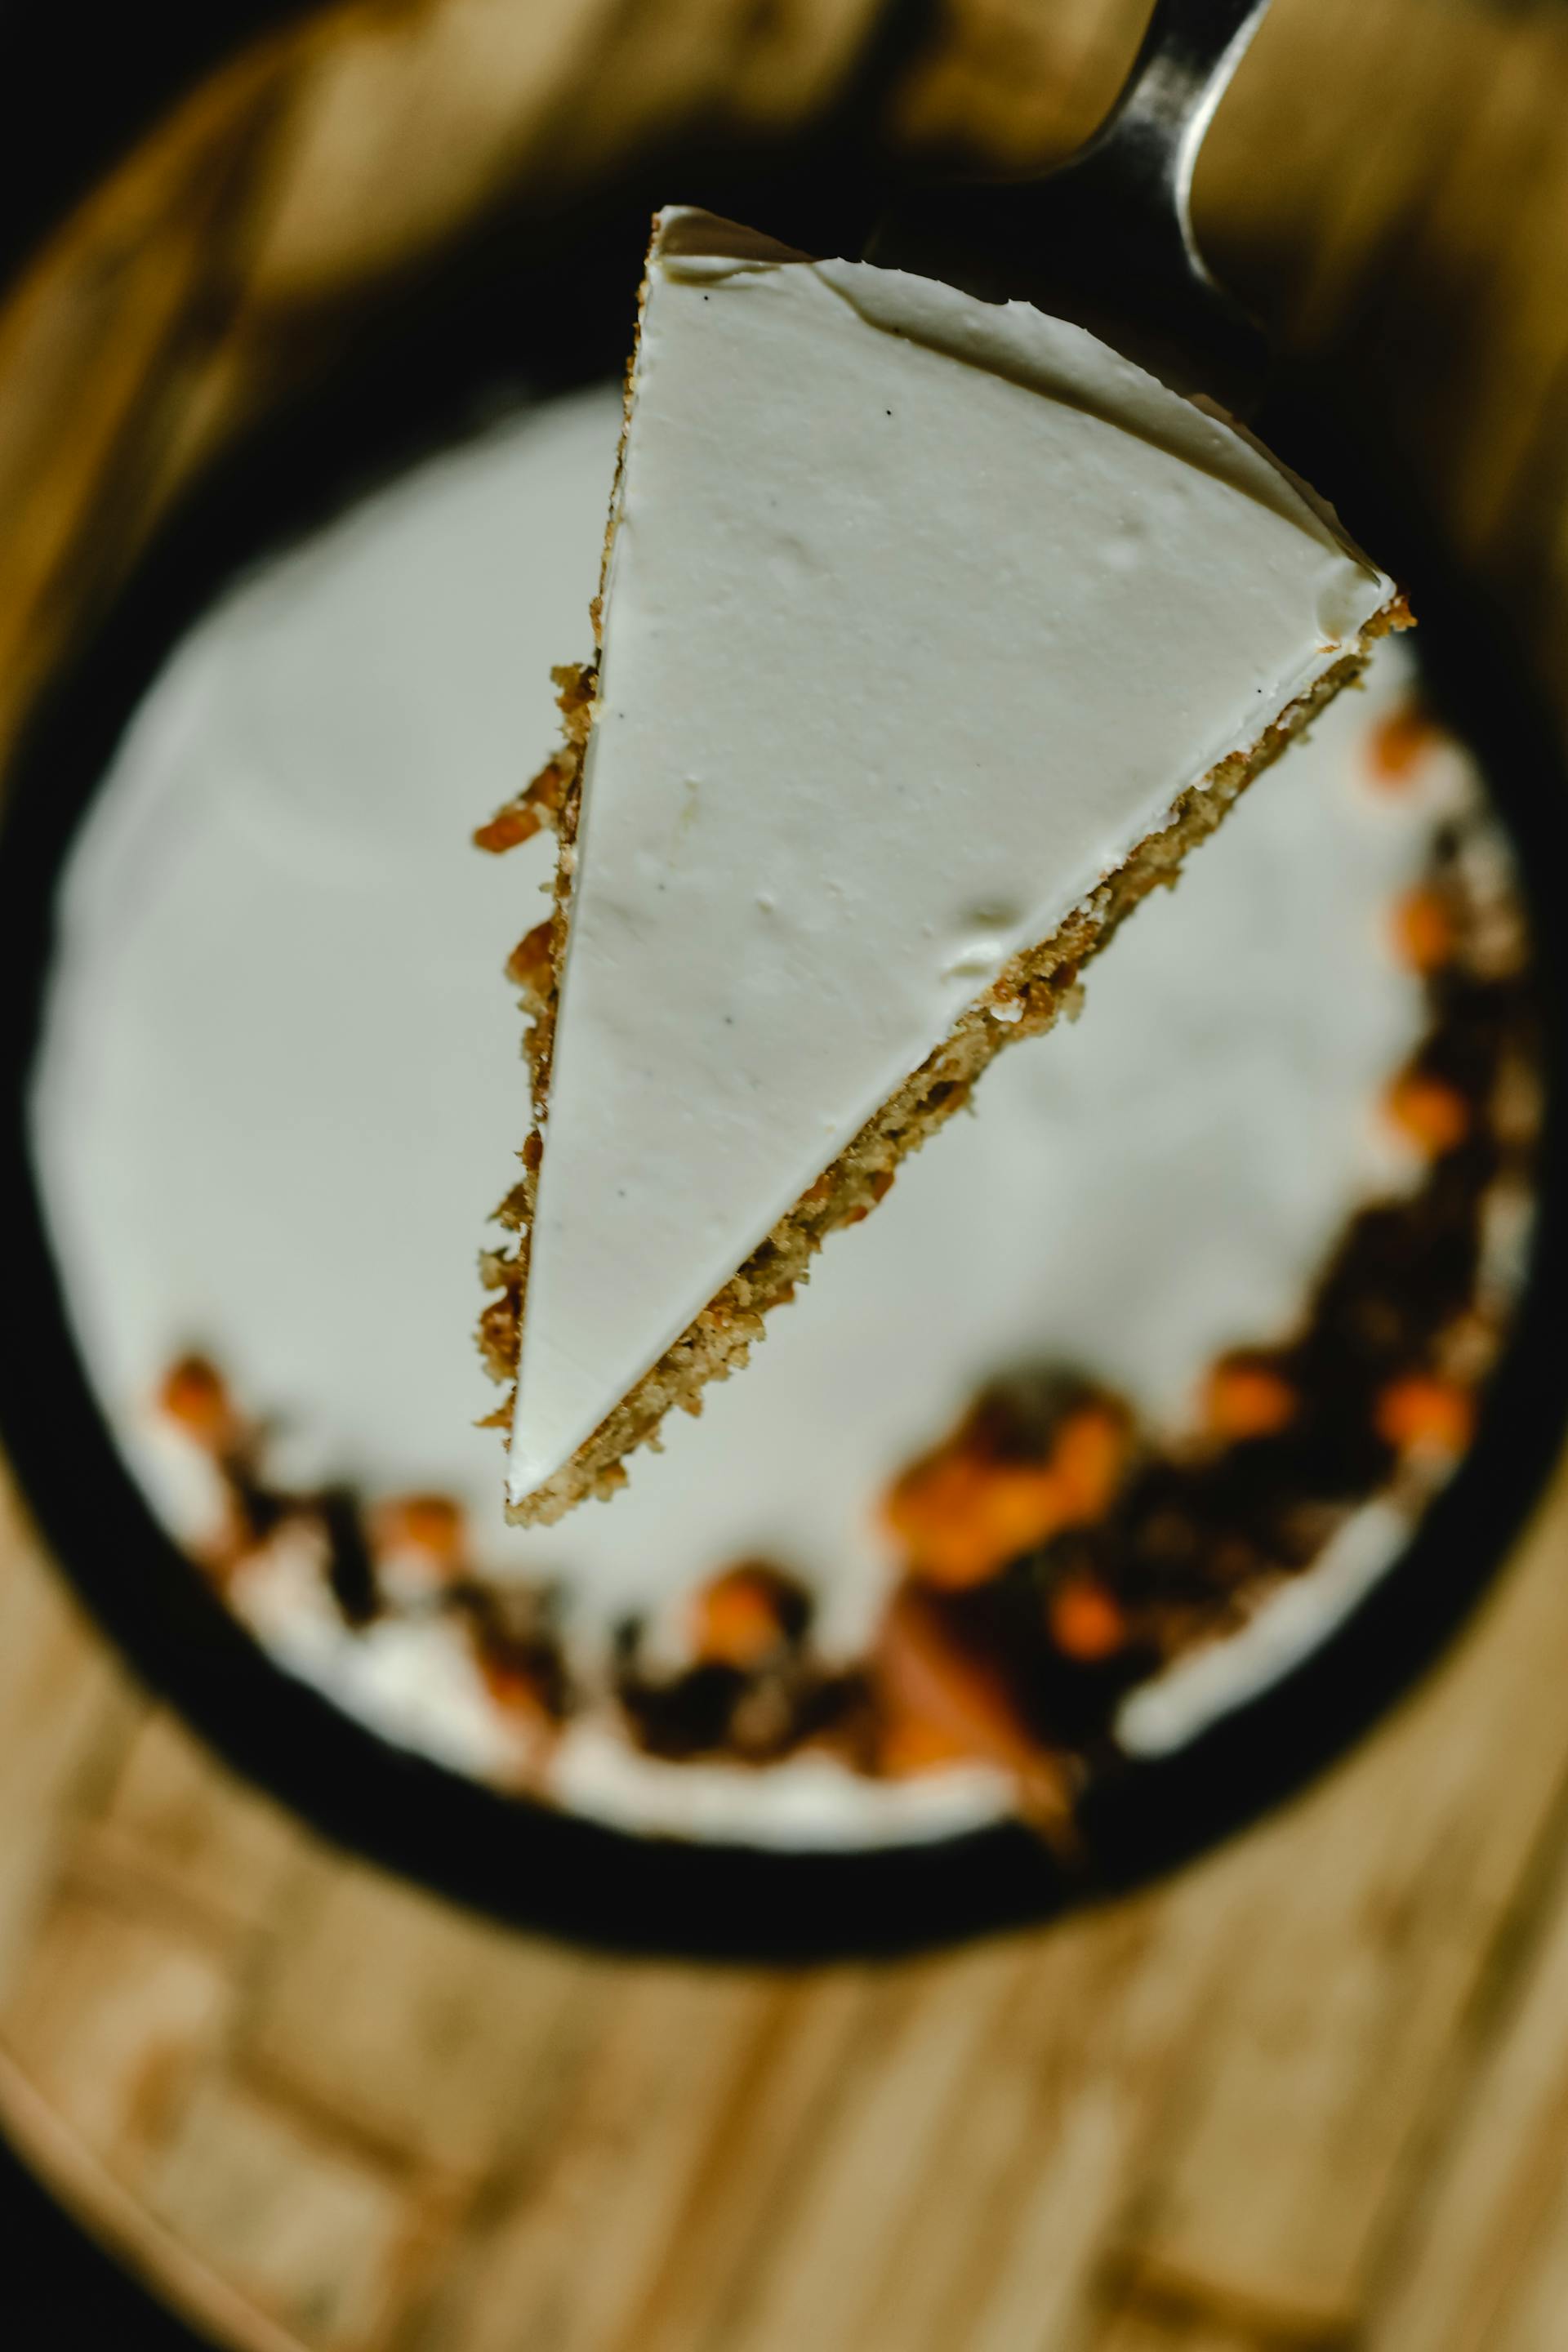 Vue de dessus d'une tranche de gâteau aux carottes | Source : Pexels